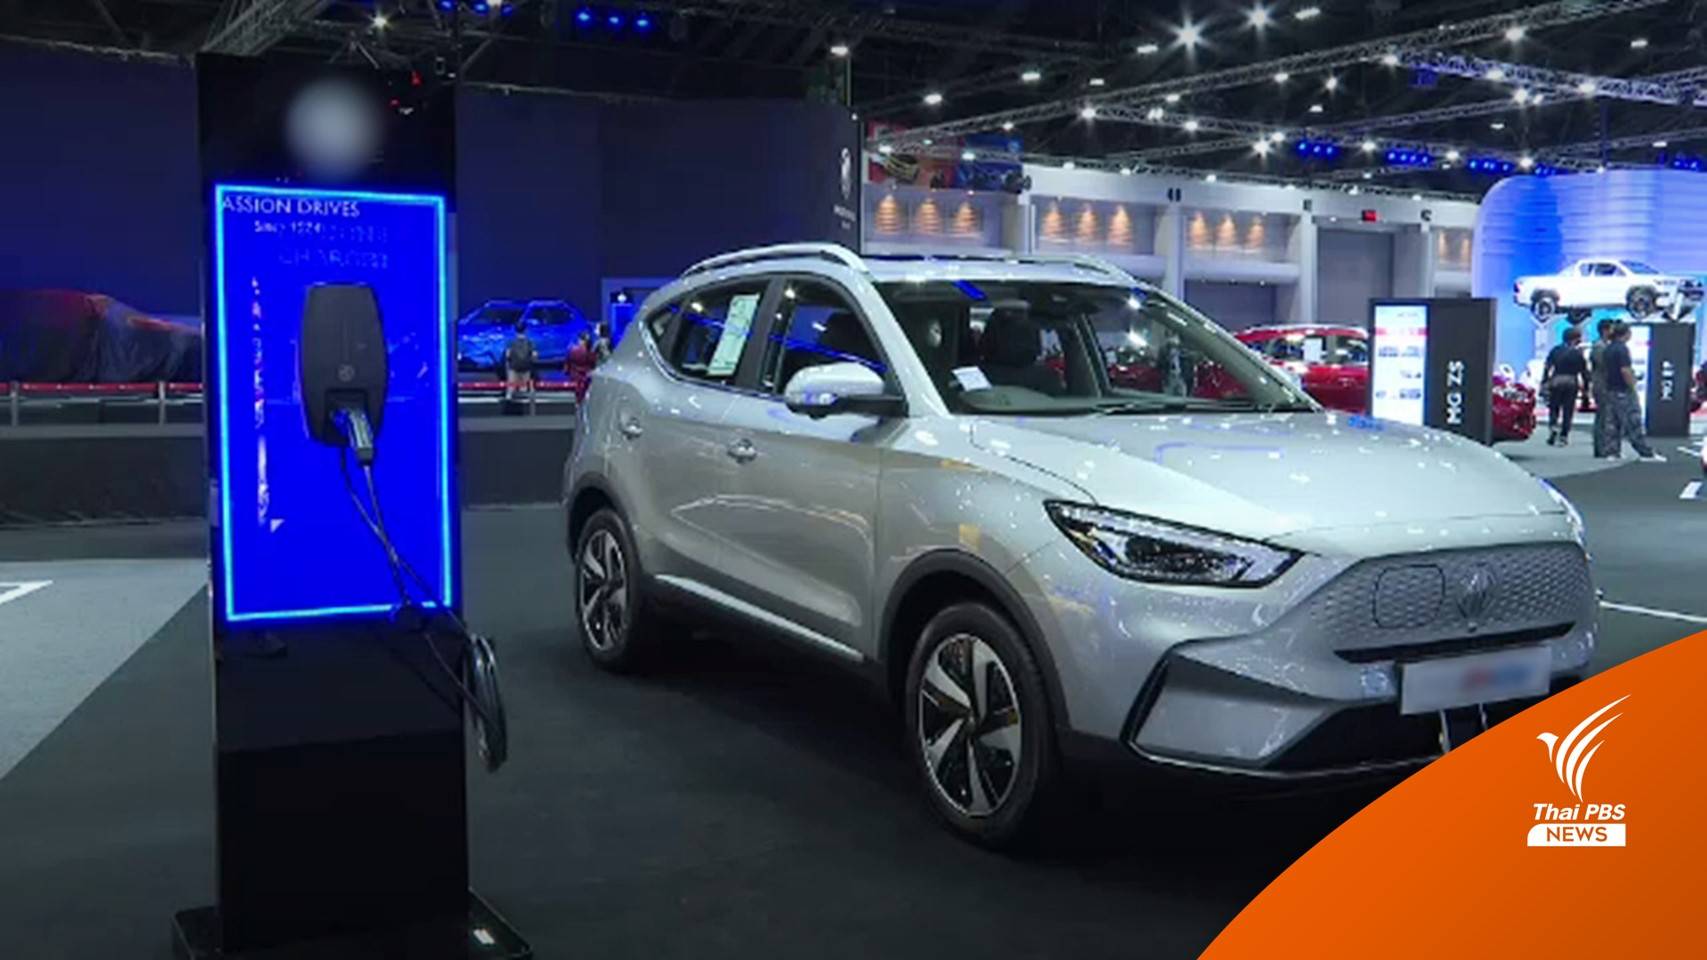 2 ค่ายรถจีนเร่งทำตลาดเปิดราคาใหม่ "รถยนต์ไฟฟ้า" ในมอเตอร์โชว์